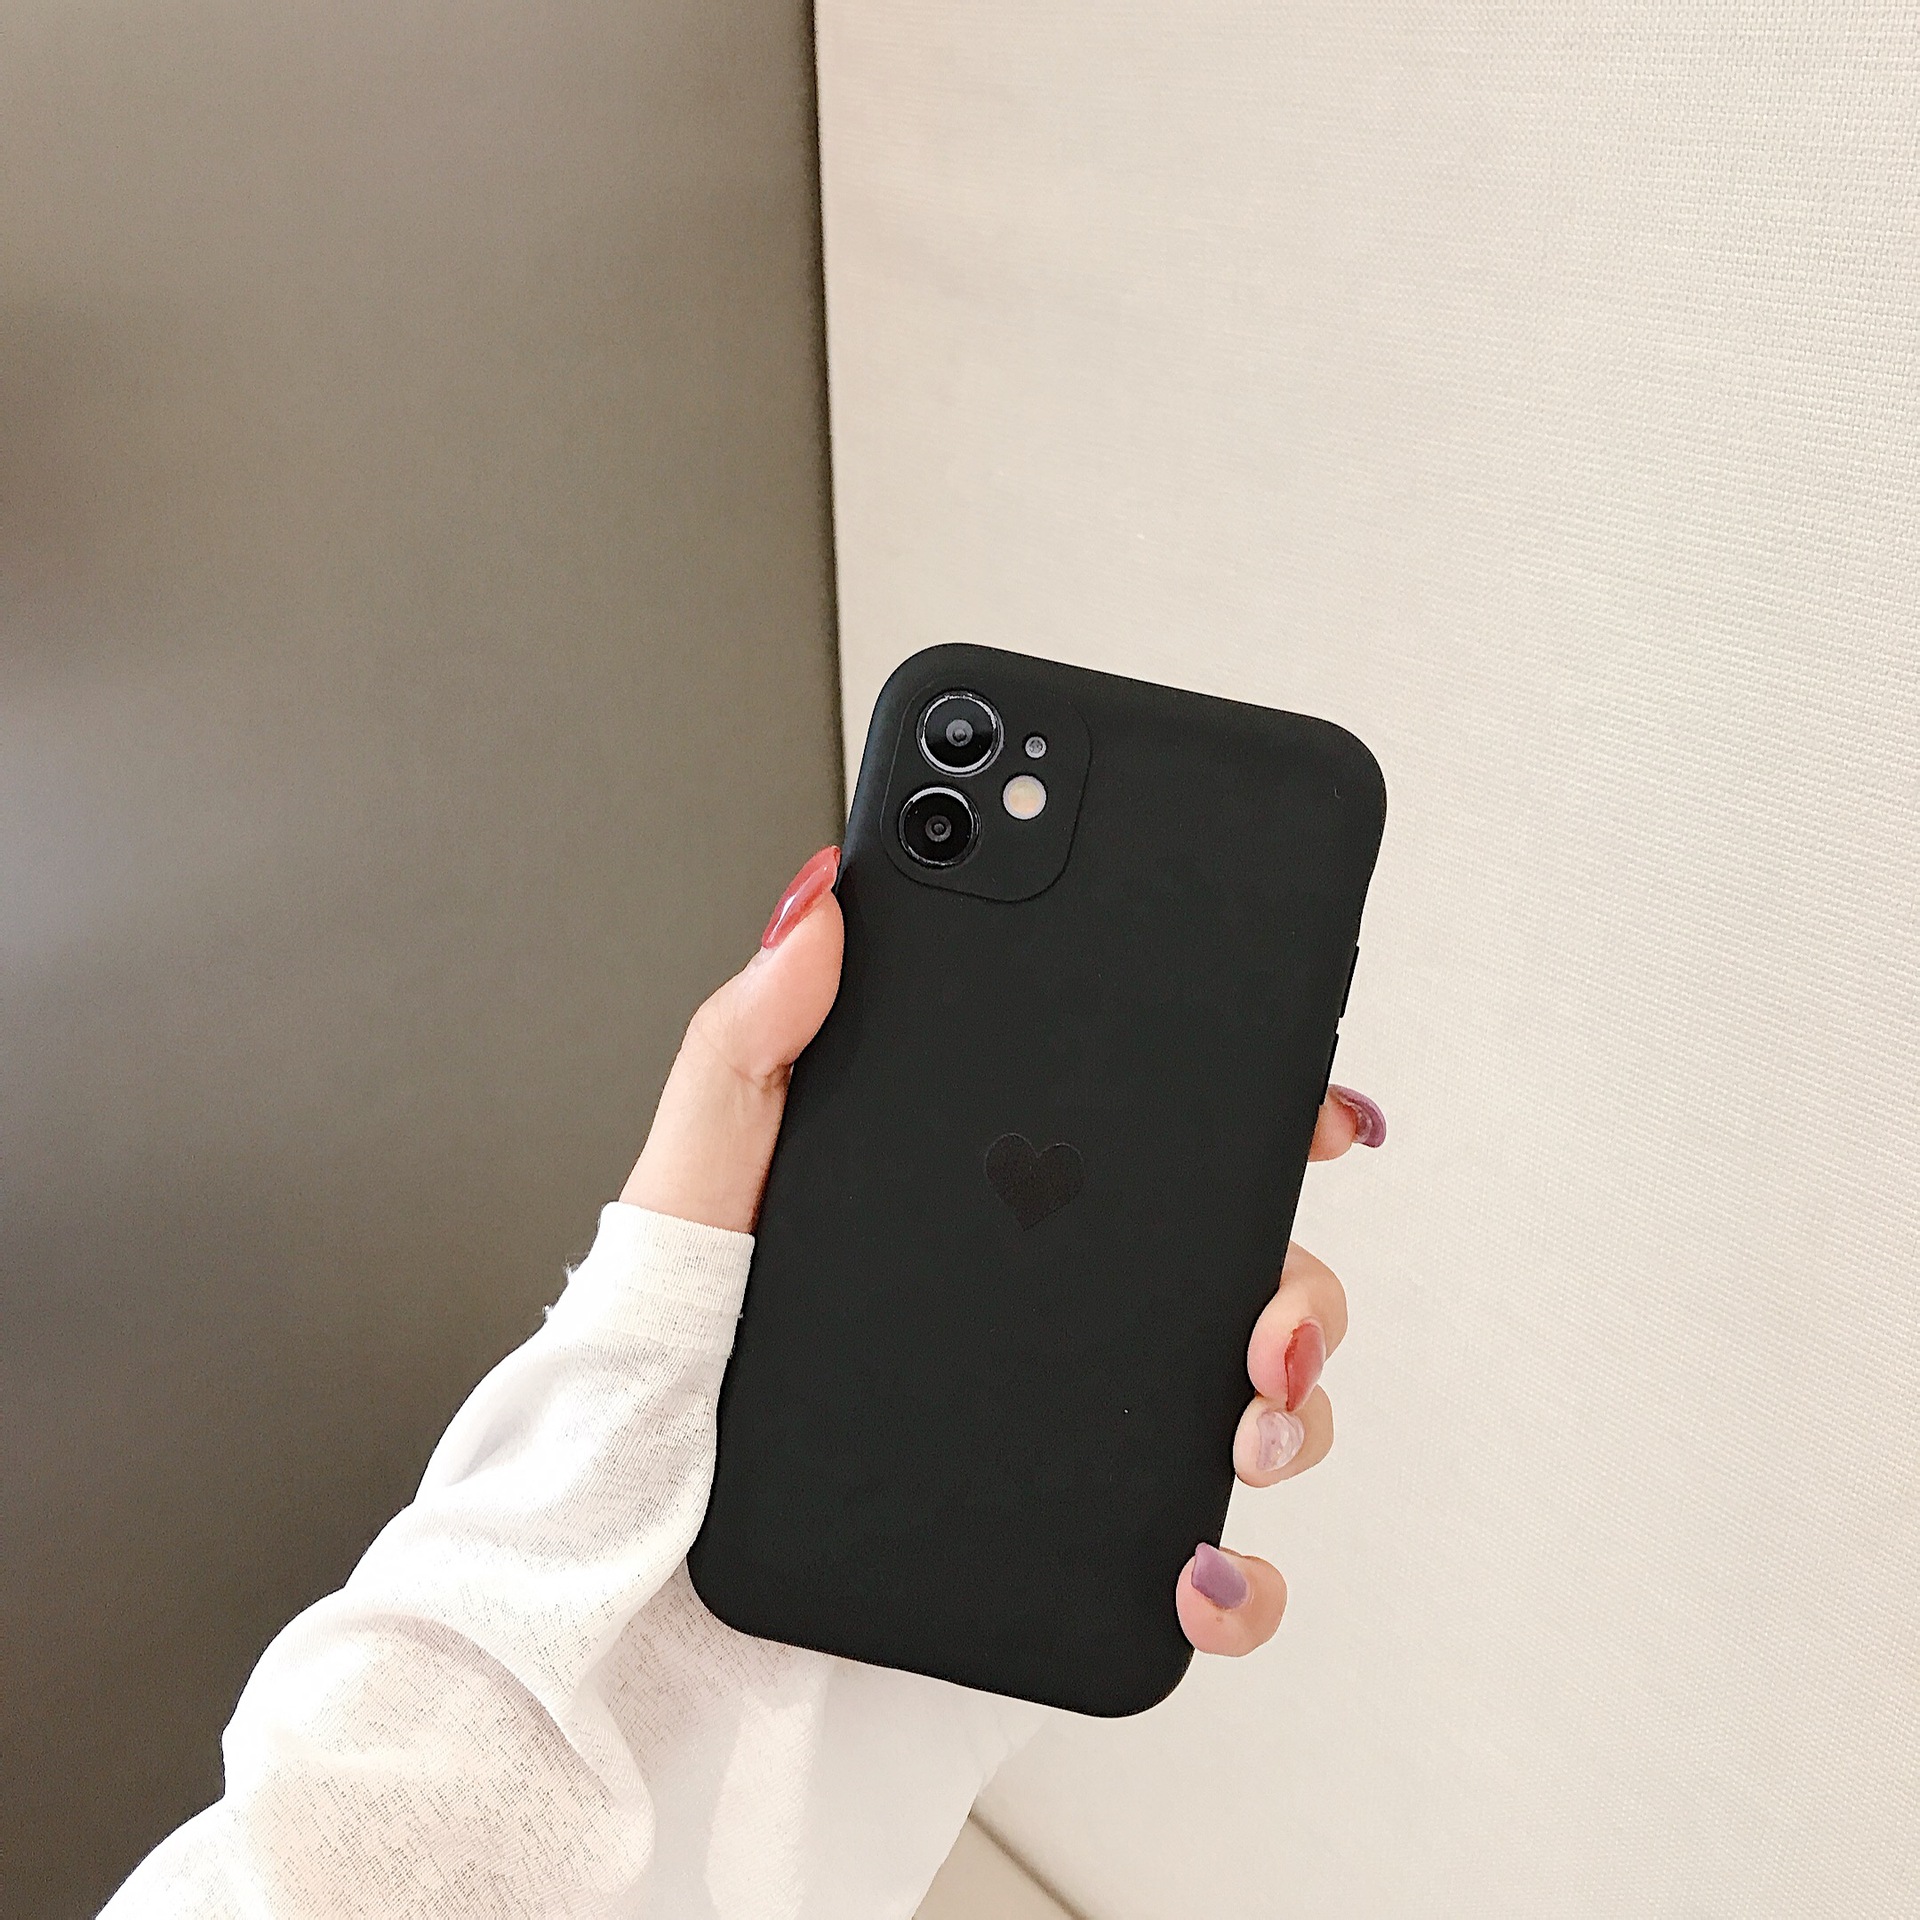 [hao fashion] เคสโทรศัพท์มือถือ เคสไอโฟน เคสมือถือ เคสราคาถูก เคสซิลิโคนนิ่ม คลุมขอบกล้องหลัง สำหรับไอโฟน12 12 Pro Max 12 11 / X / XR / max HF0174 ตระกูลสี dark wood love heart รูปแบบรุ่นที่ีรองรับ iPhone12 Mini